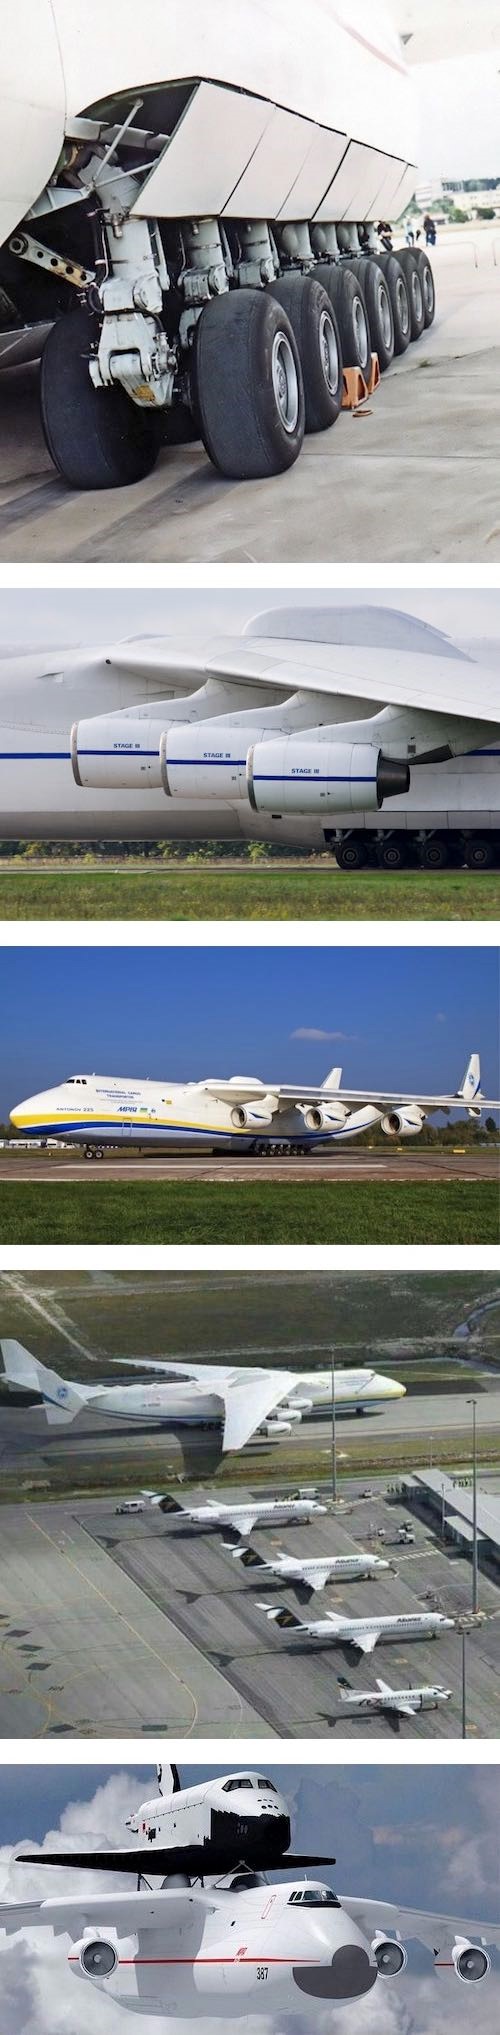 세계에서 가장큰 비행기.jpg